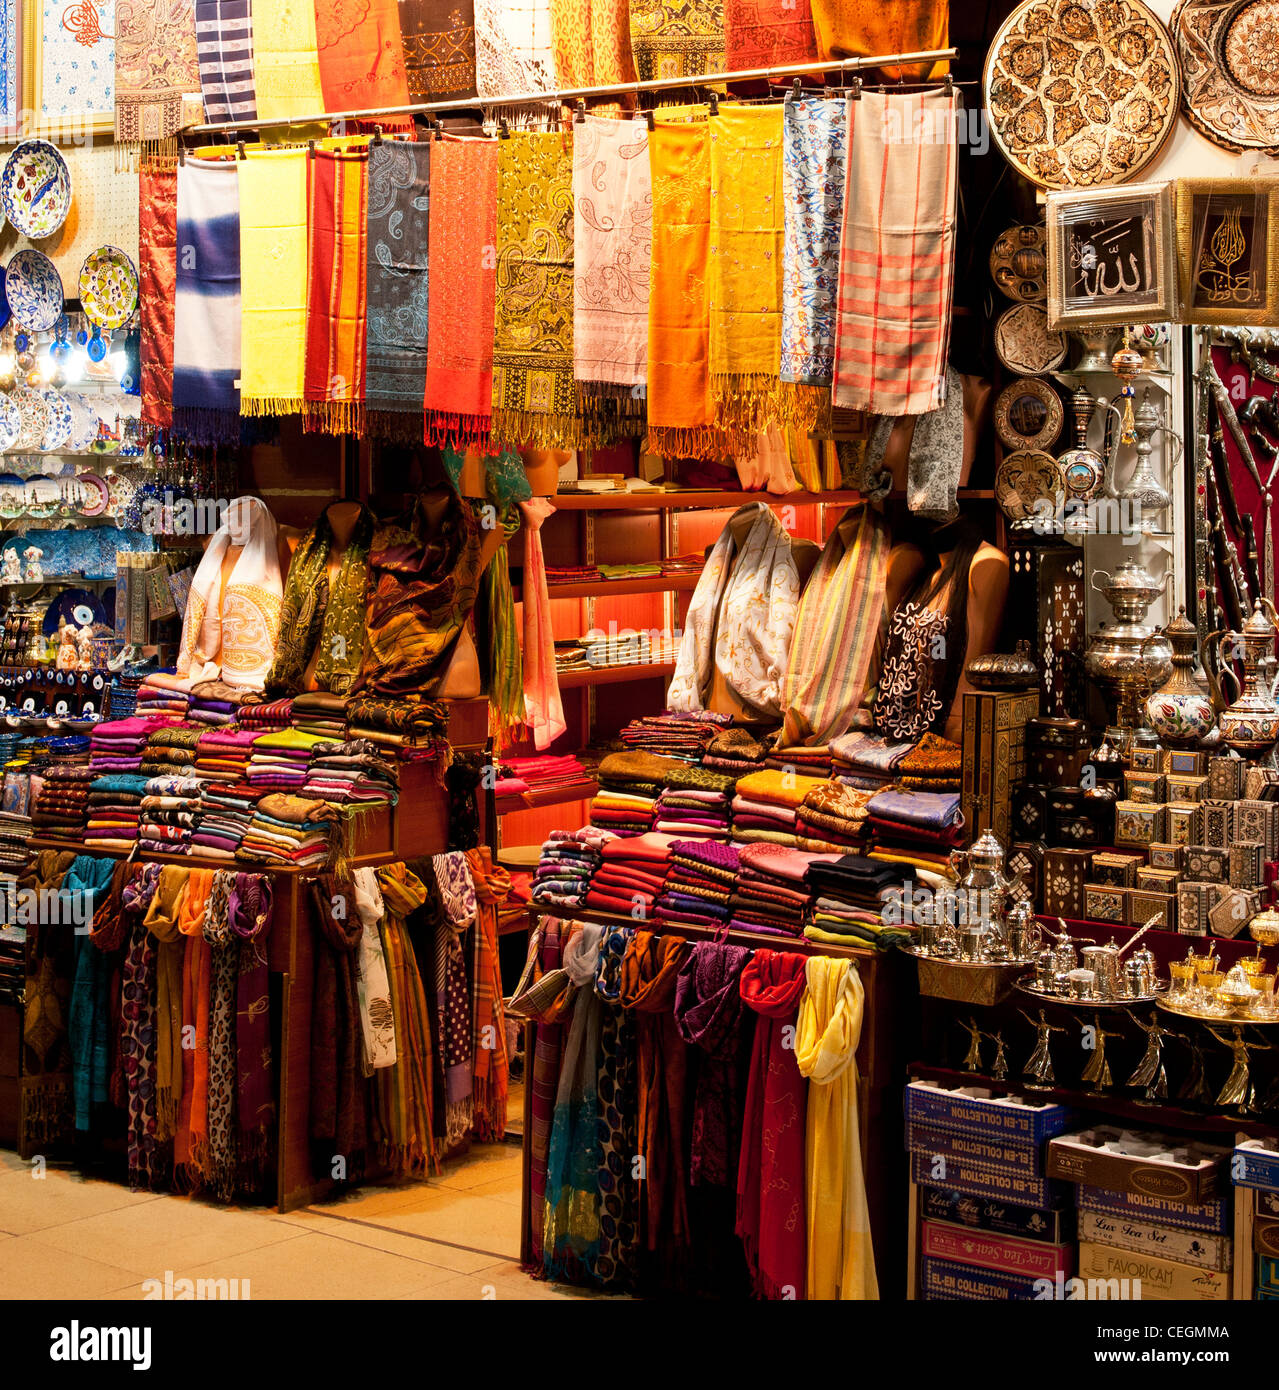 L'intérieur de la boutique de tissu Grand Bazar, Beyazit, Istanbul, Turquie Banque D'Images